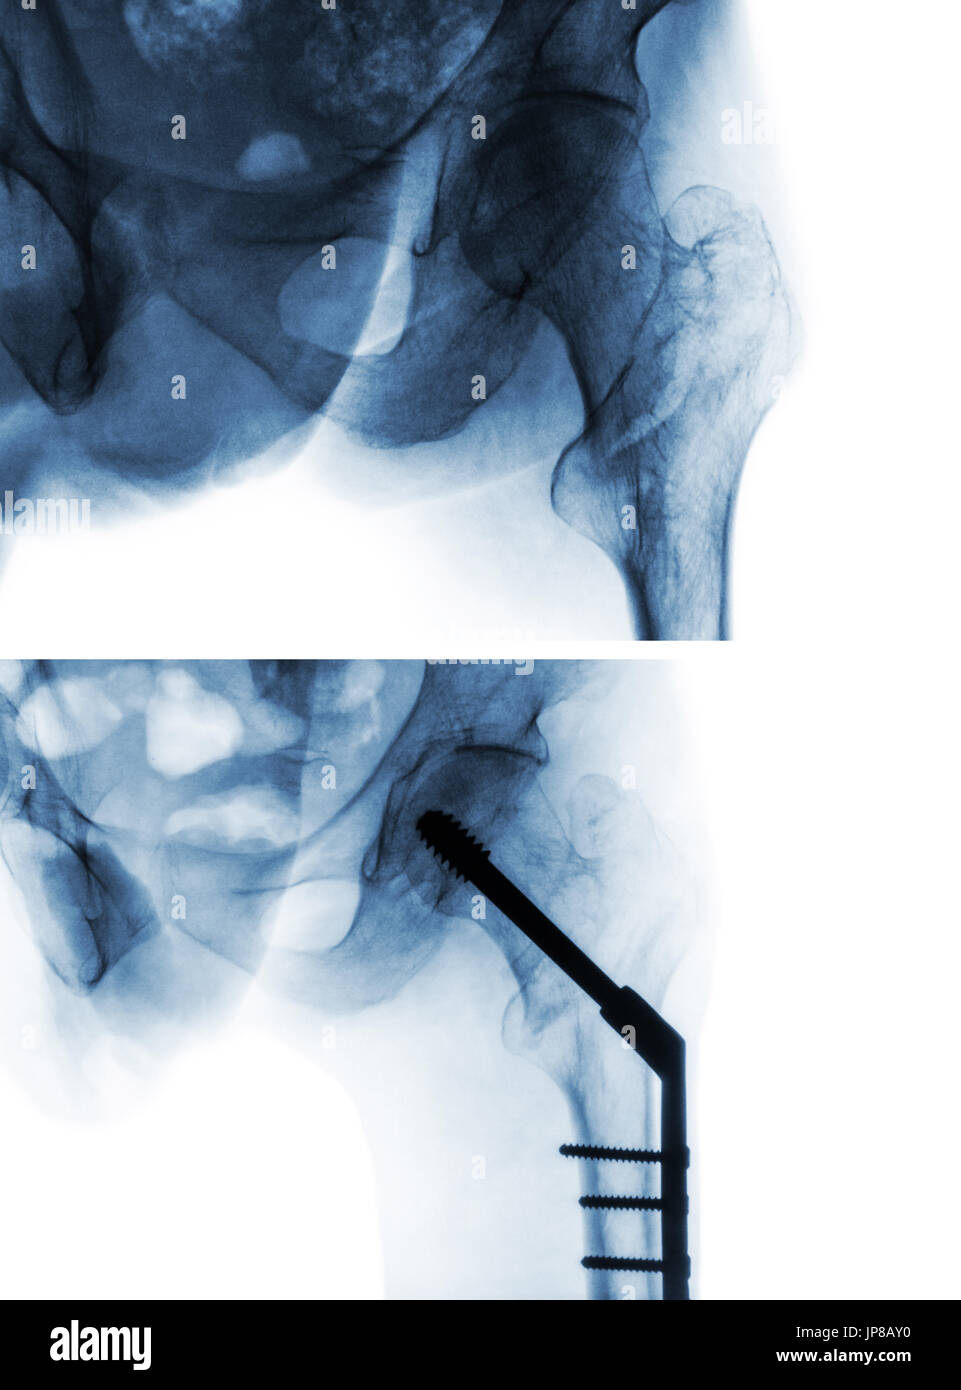 Fratture intertrocanteriche frattura femore ( thigh bone ). X-ray di hip e il confronto tra la prima di un intervento chirurgico (immagine superiore) e dopo un intervento chirurgico (immagine inferiore). Pat Foto Stock